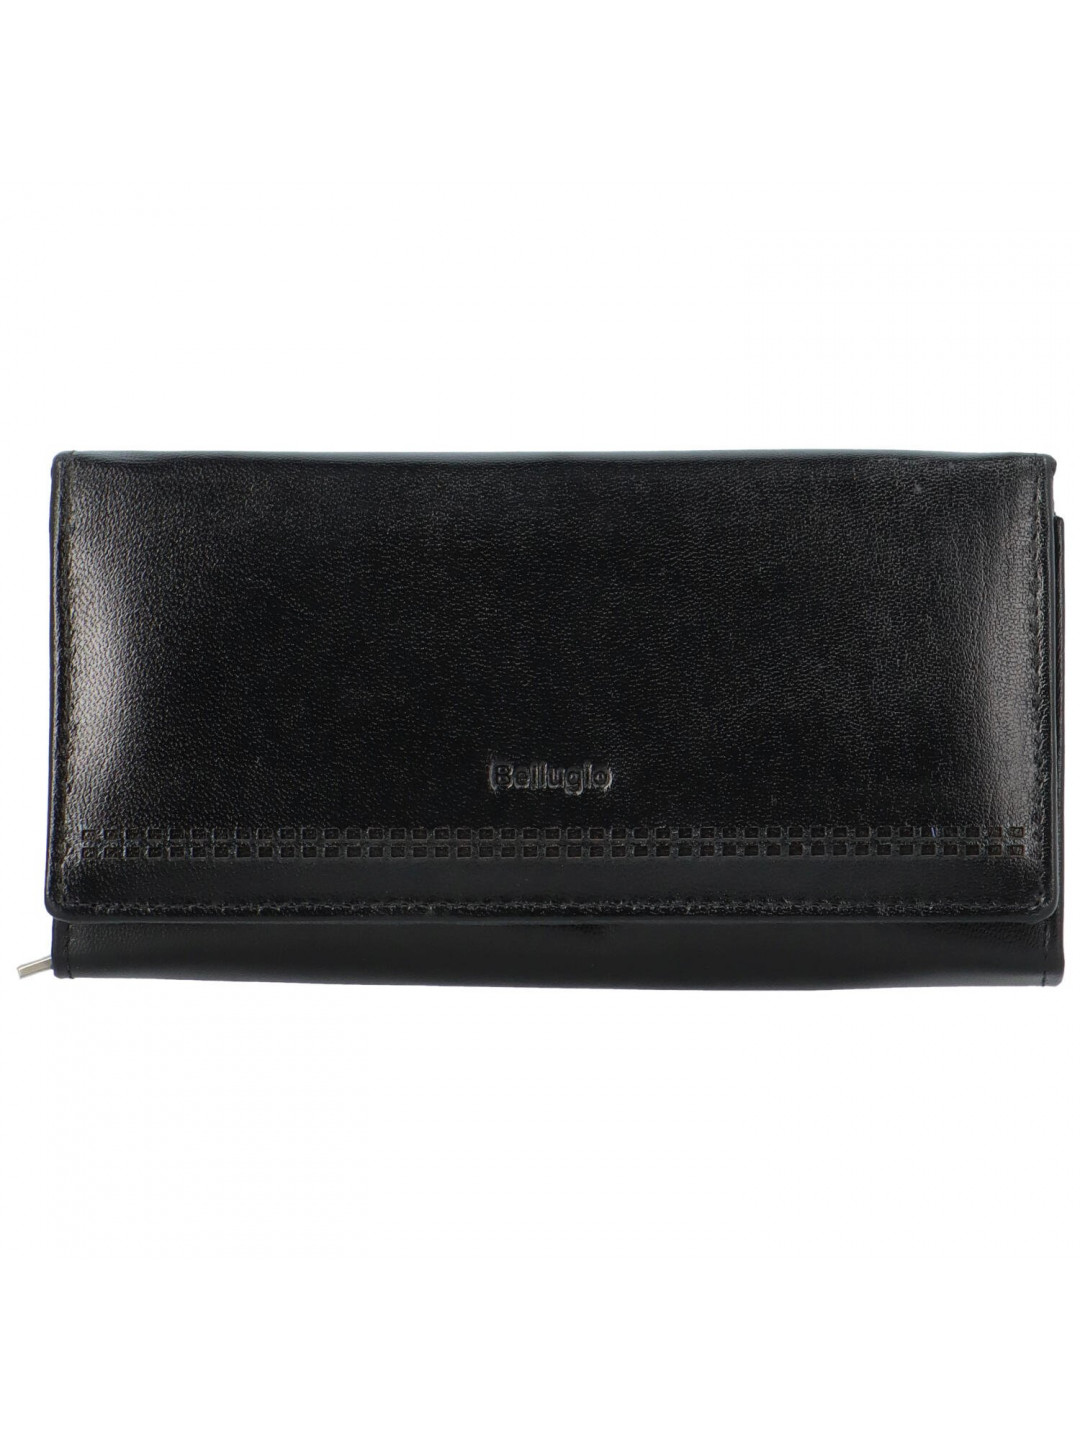 Trendy velká dámská peněženka Bellugio Loprina černá